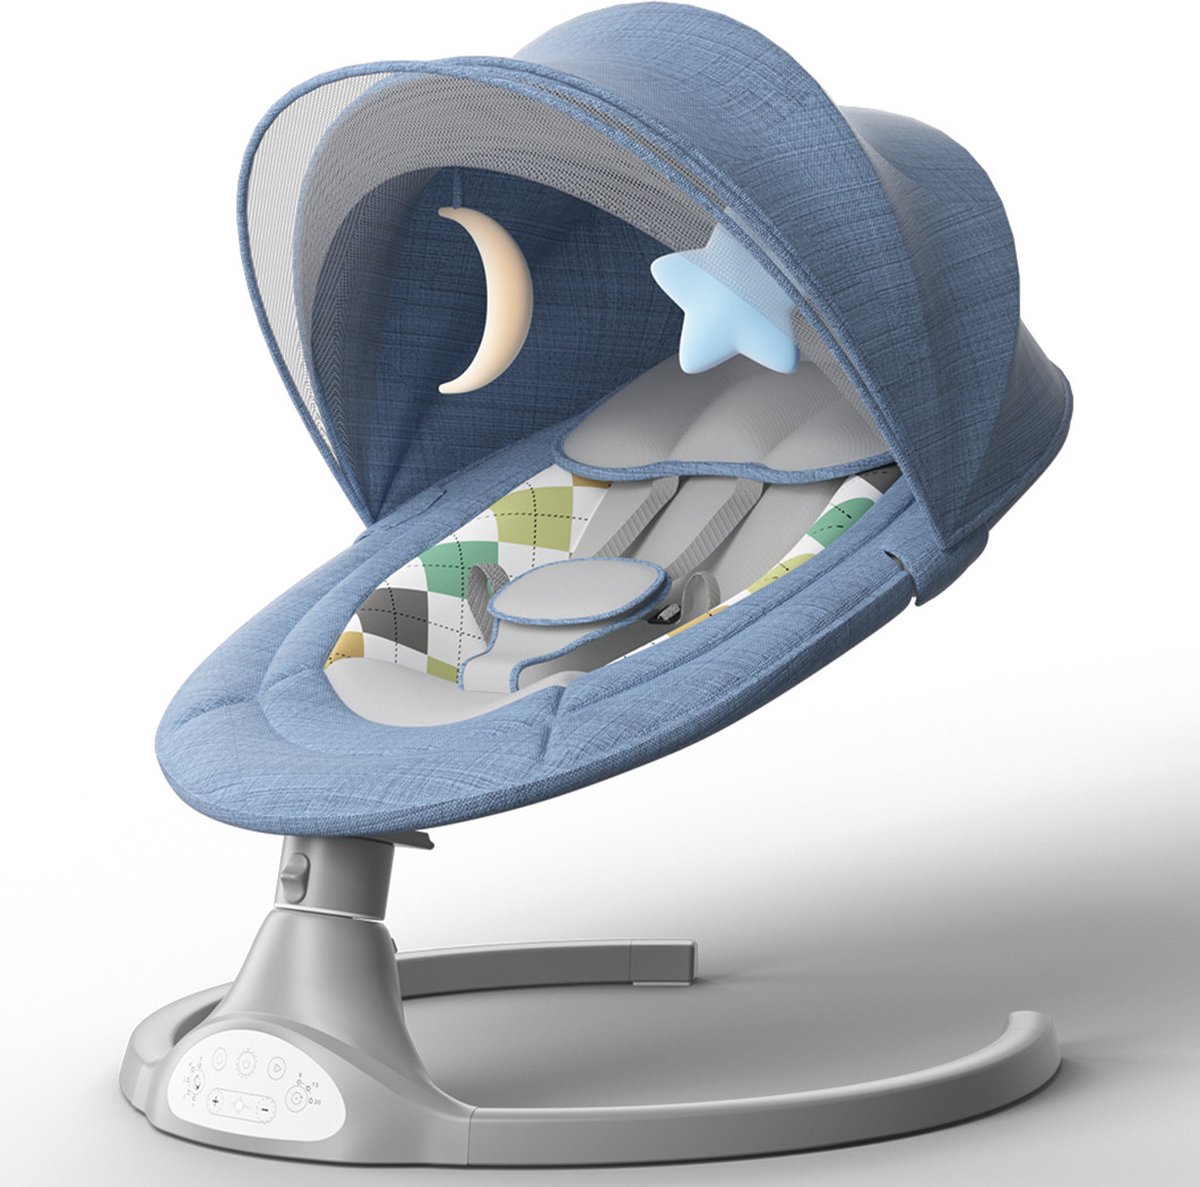 Bioby Elektrisch Wipstoel - Baby Schommelstoel - Elektrische Babyschommel - Babyswing - Wipstoeltjes voor Baby met Muggennet - Blauw